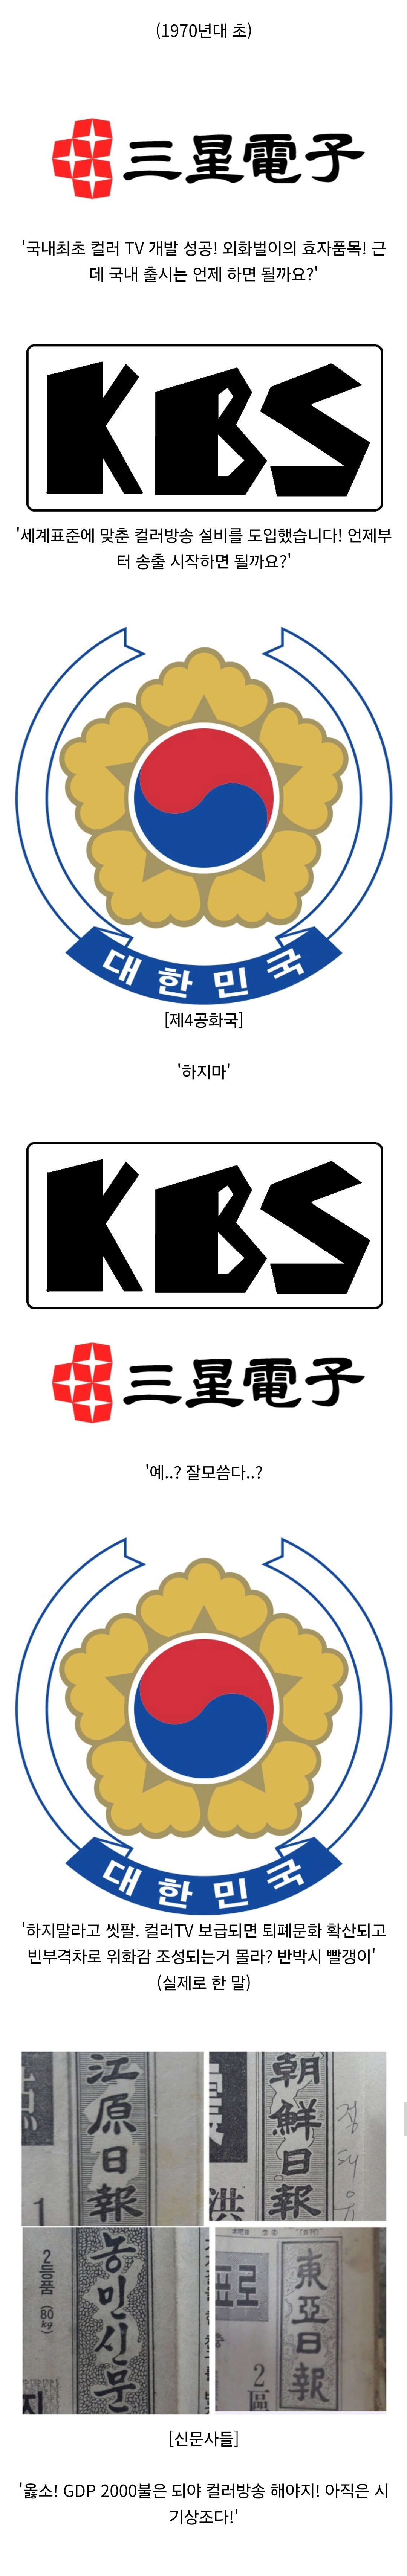 한국에 컬러TV가 보급되기 시작한 경위1.jpg